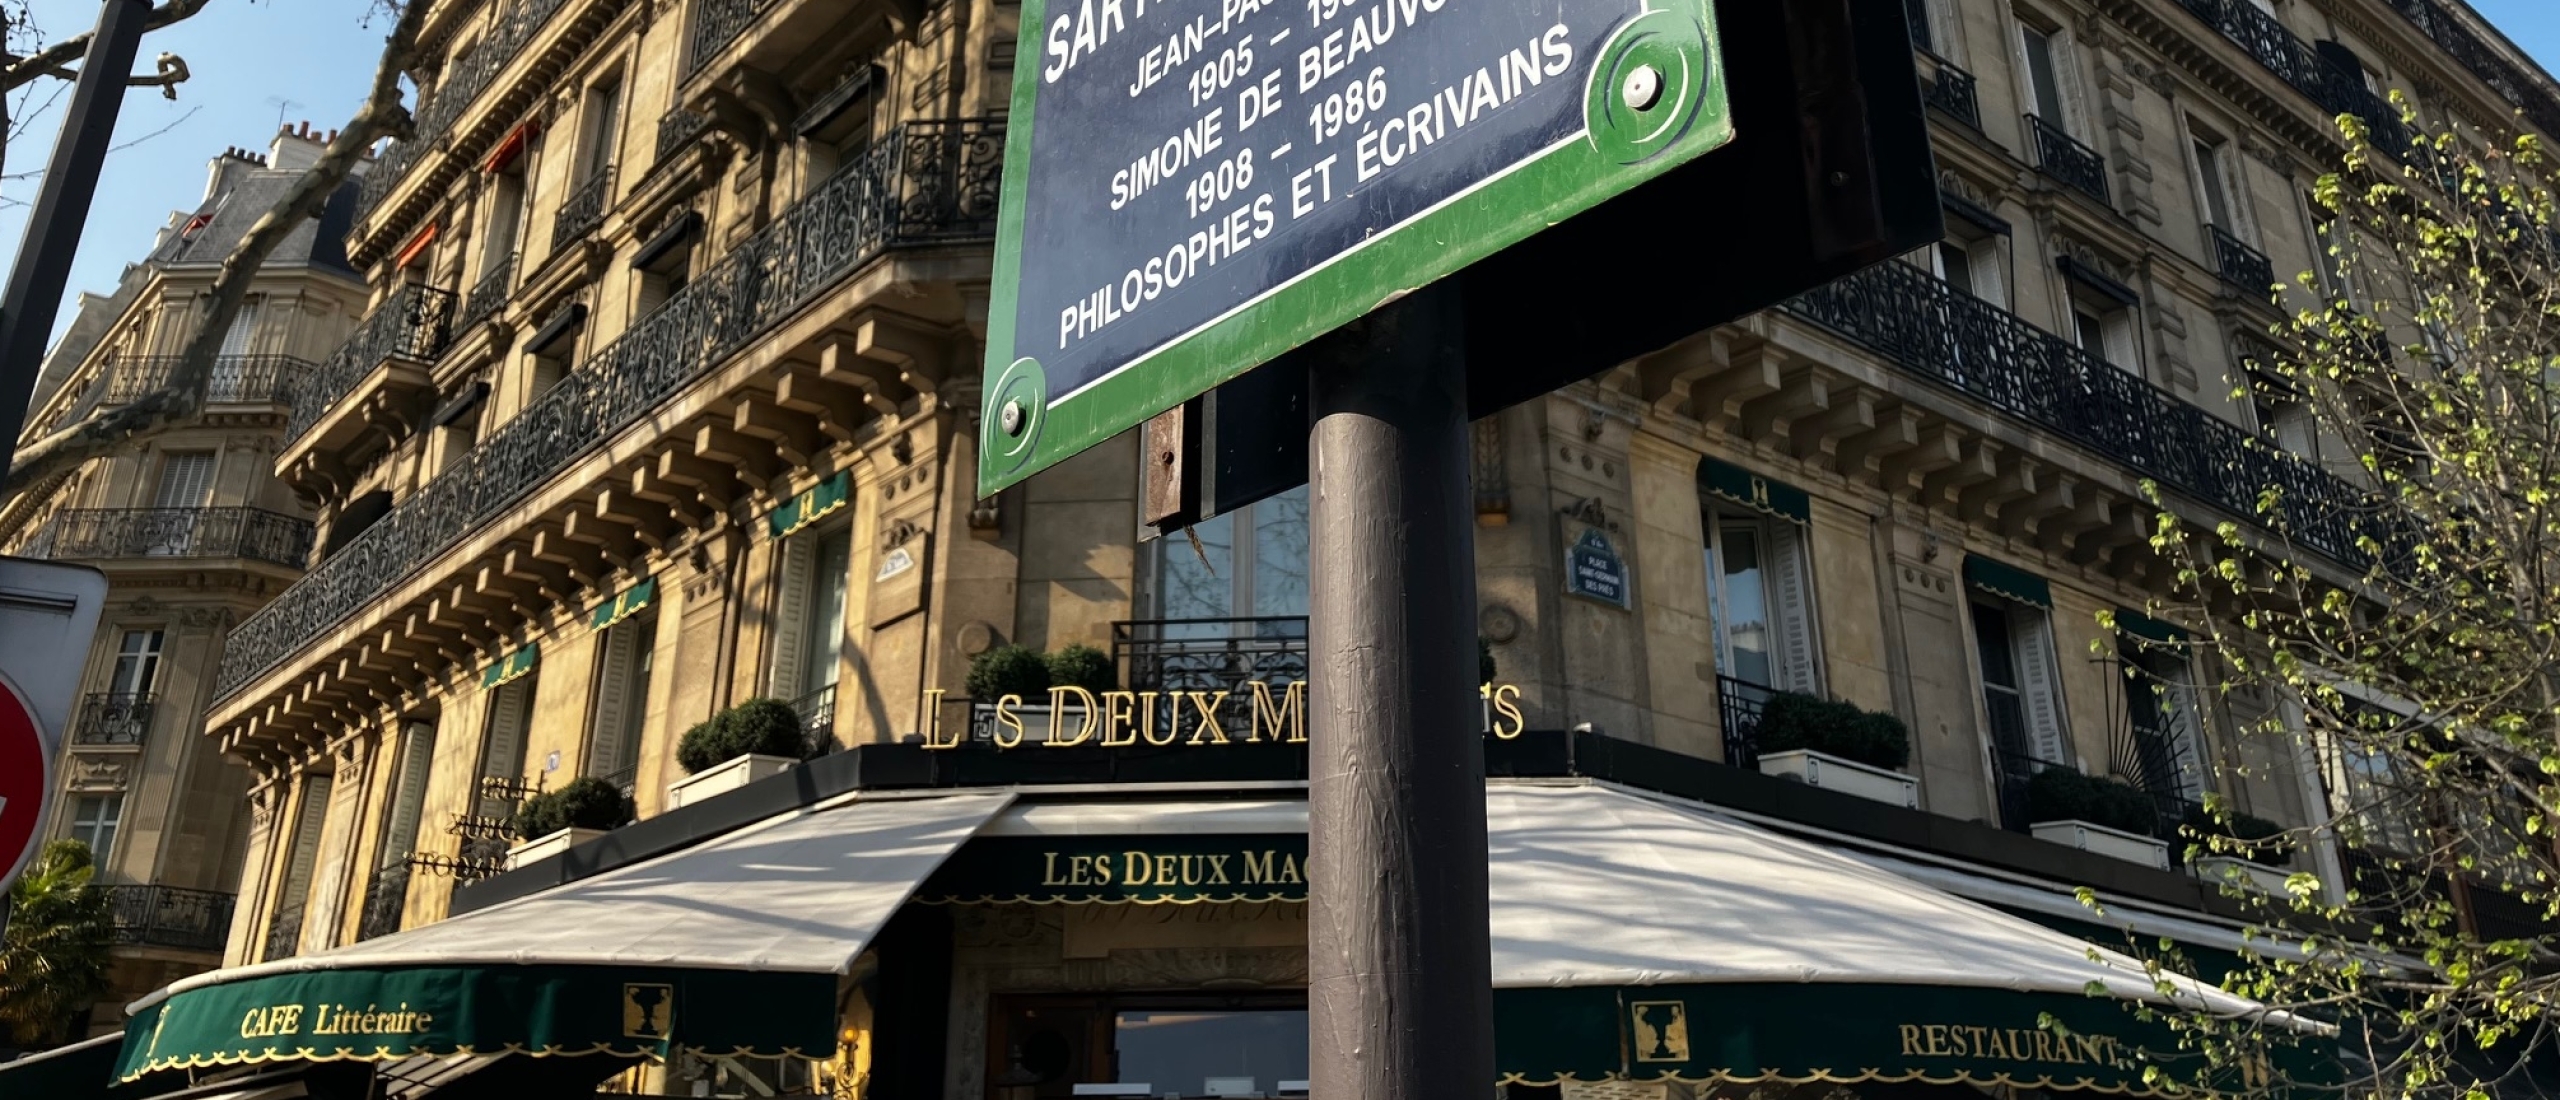 Legendarische koffie in Parijs